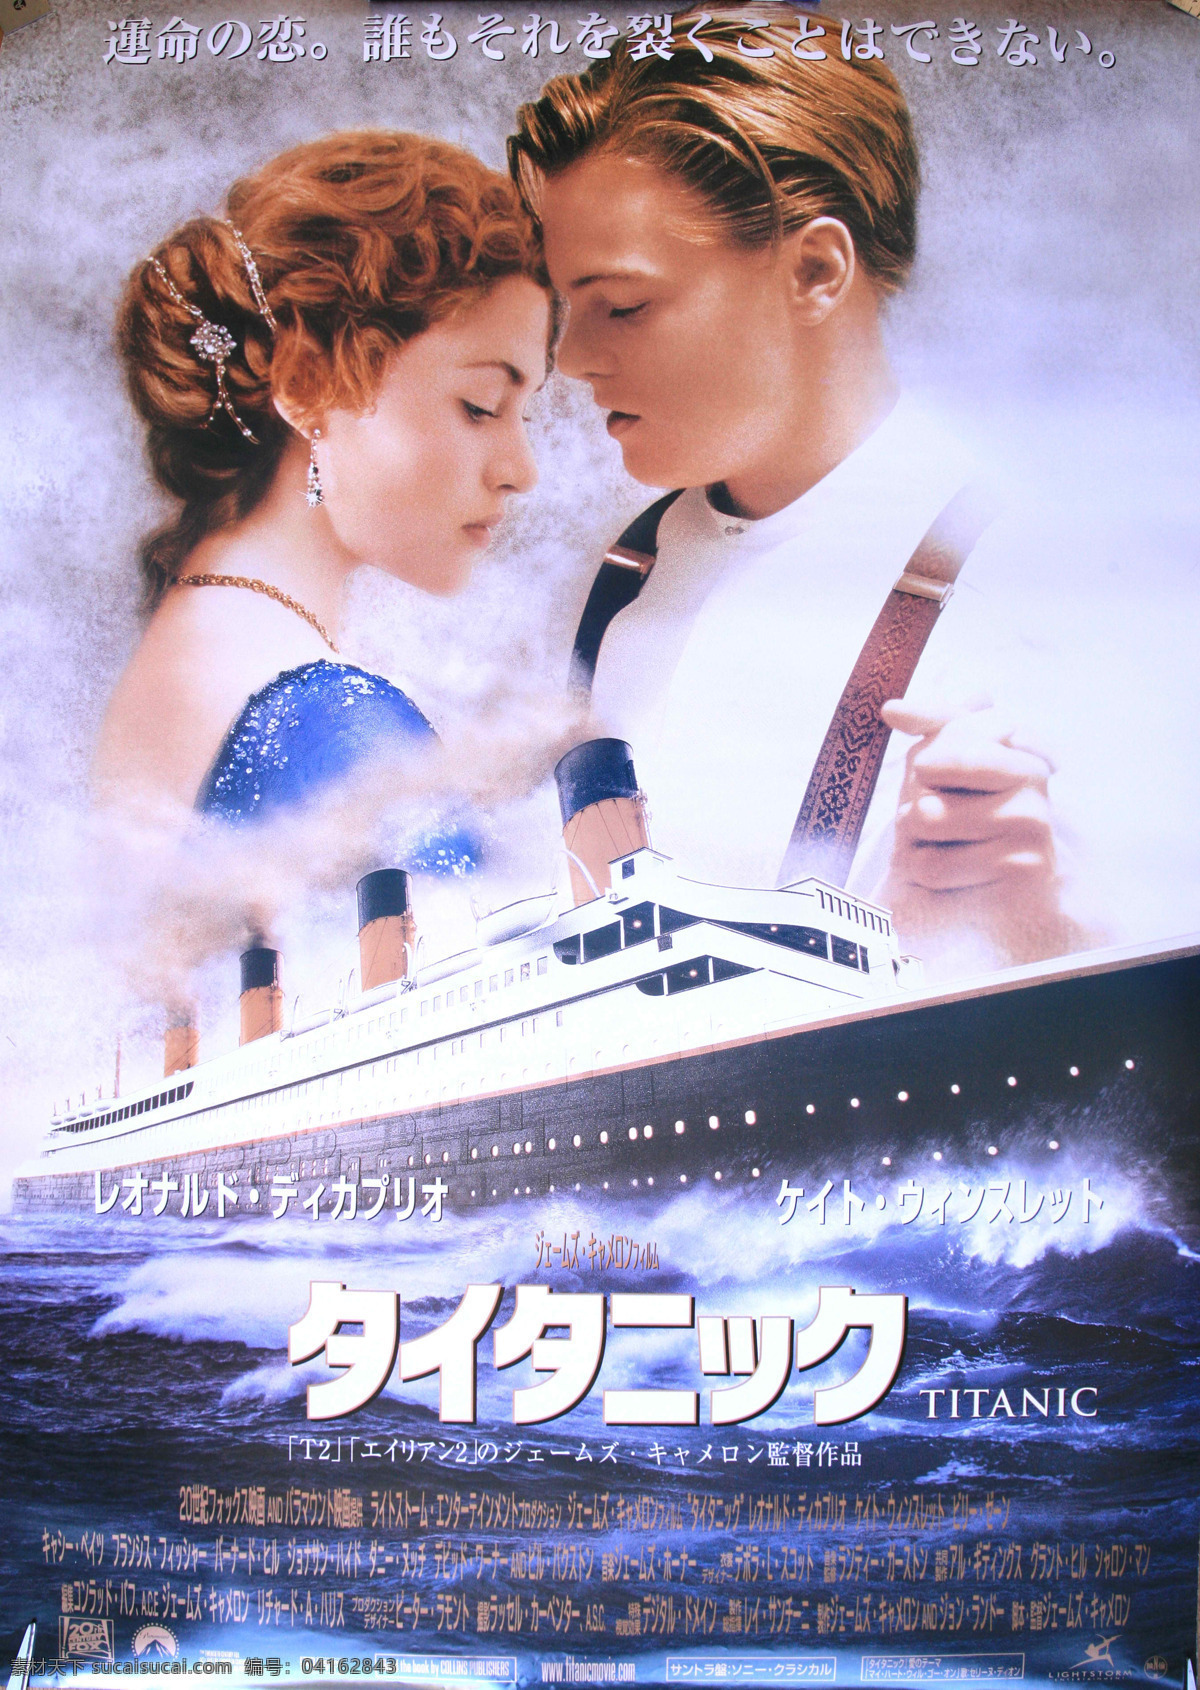 泰坦尼克号 文化艺术 titanic 日 版 海报 设计素材 模板下载 日版海报 莱昂纳多 凯特温斯莱特 日版 影视娱乐 企业文化海报